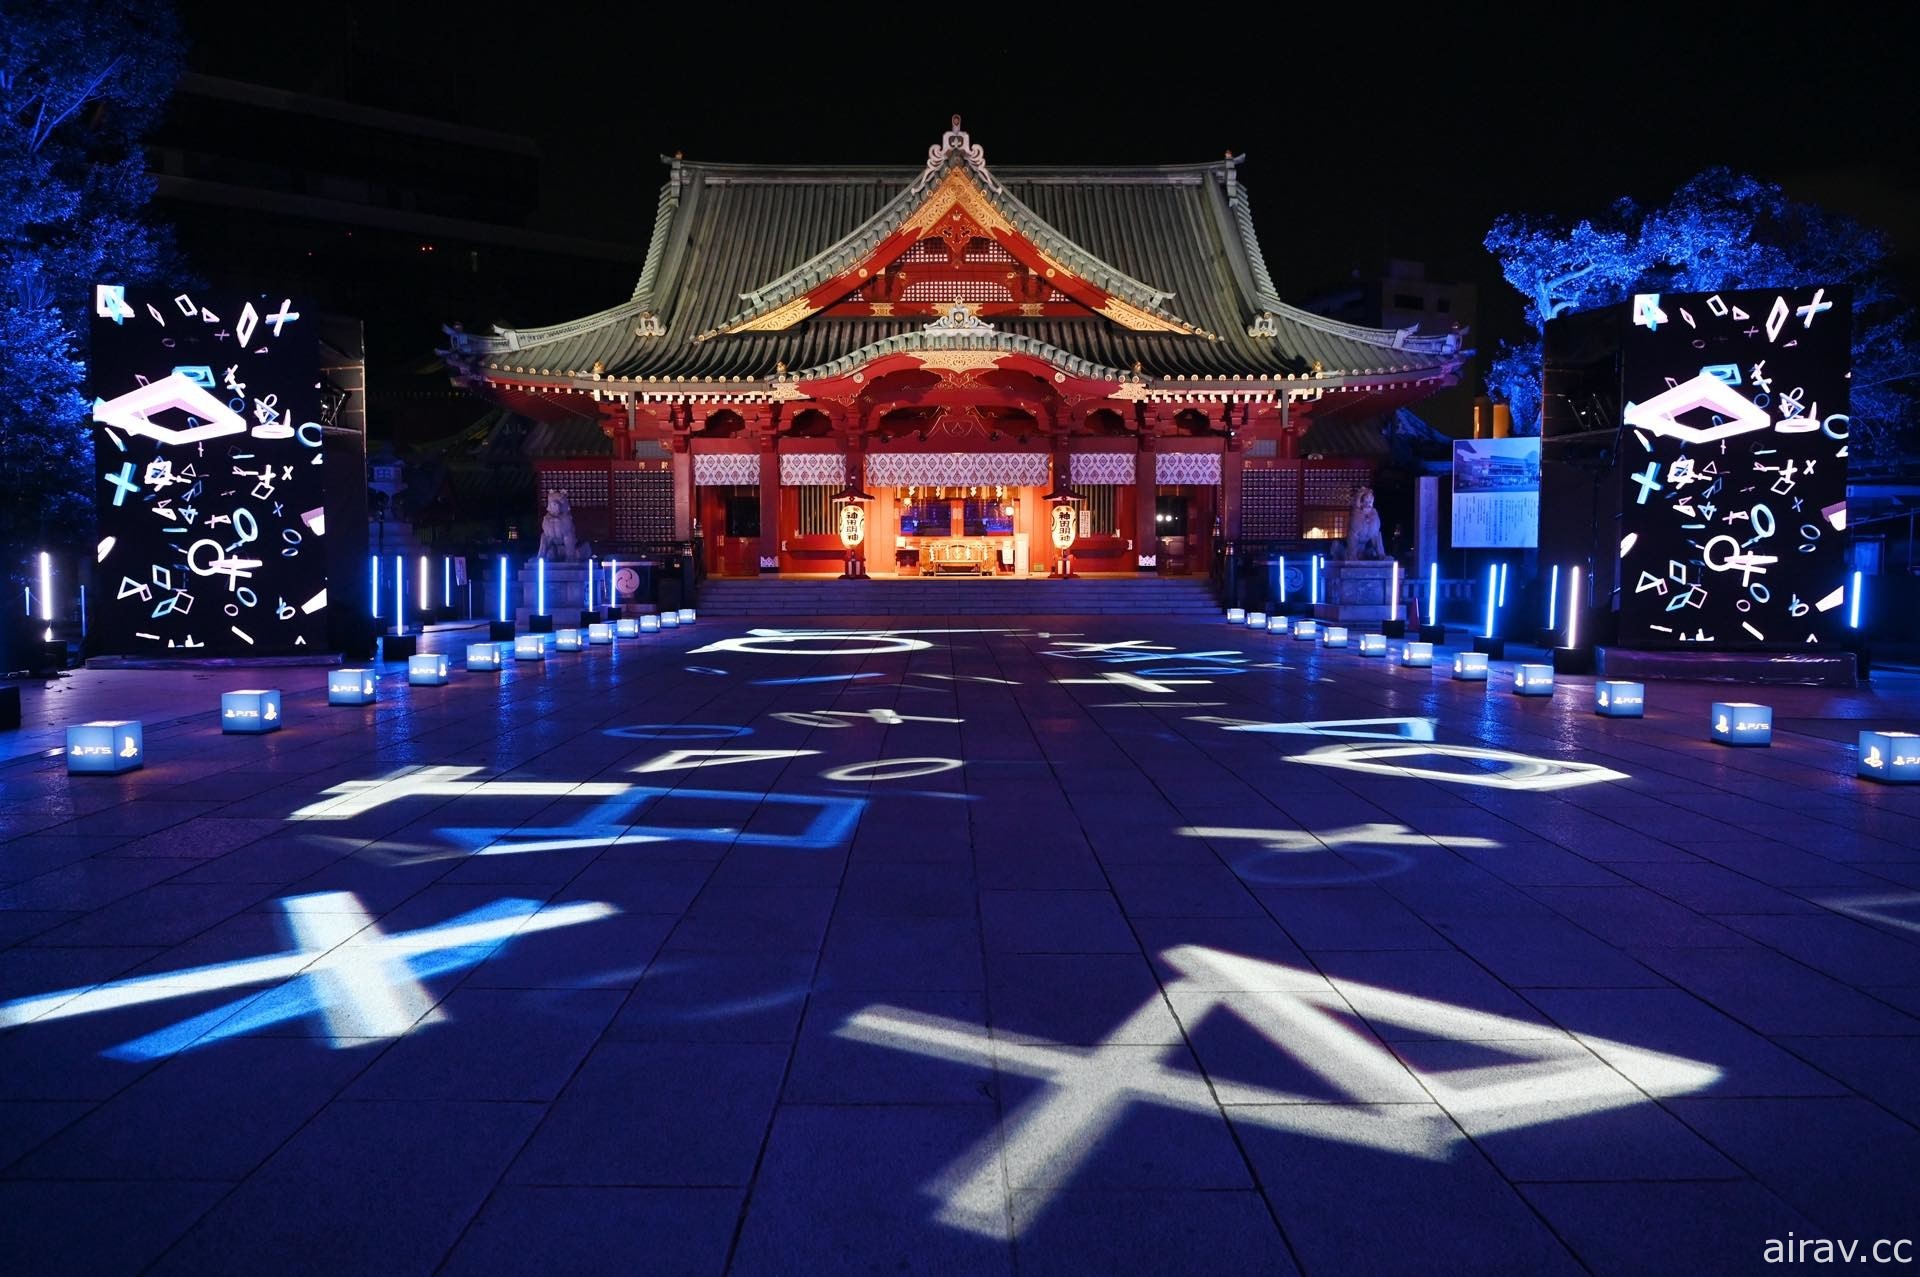 紀念 PS5 發售！日本 SIE 於秋葉原神田明神神社驚喜舉辦燈光秀活動